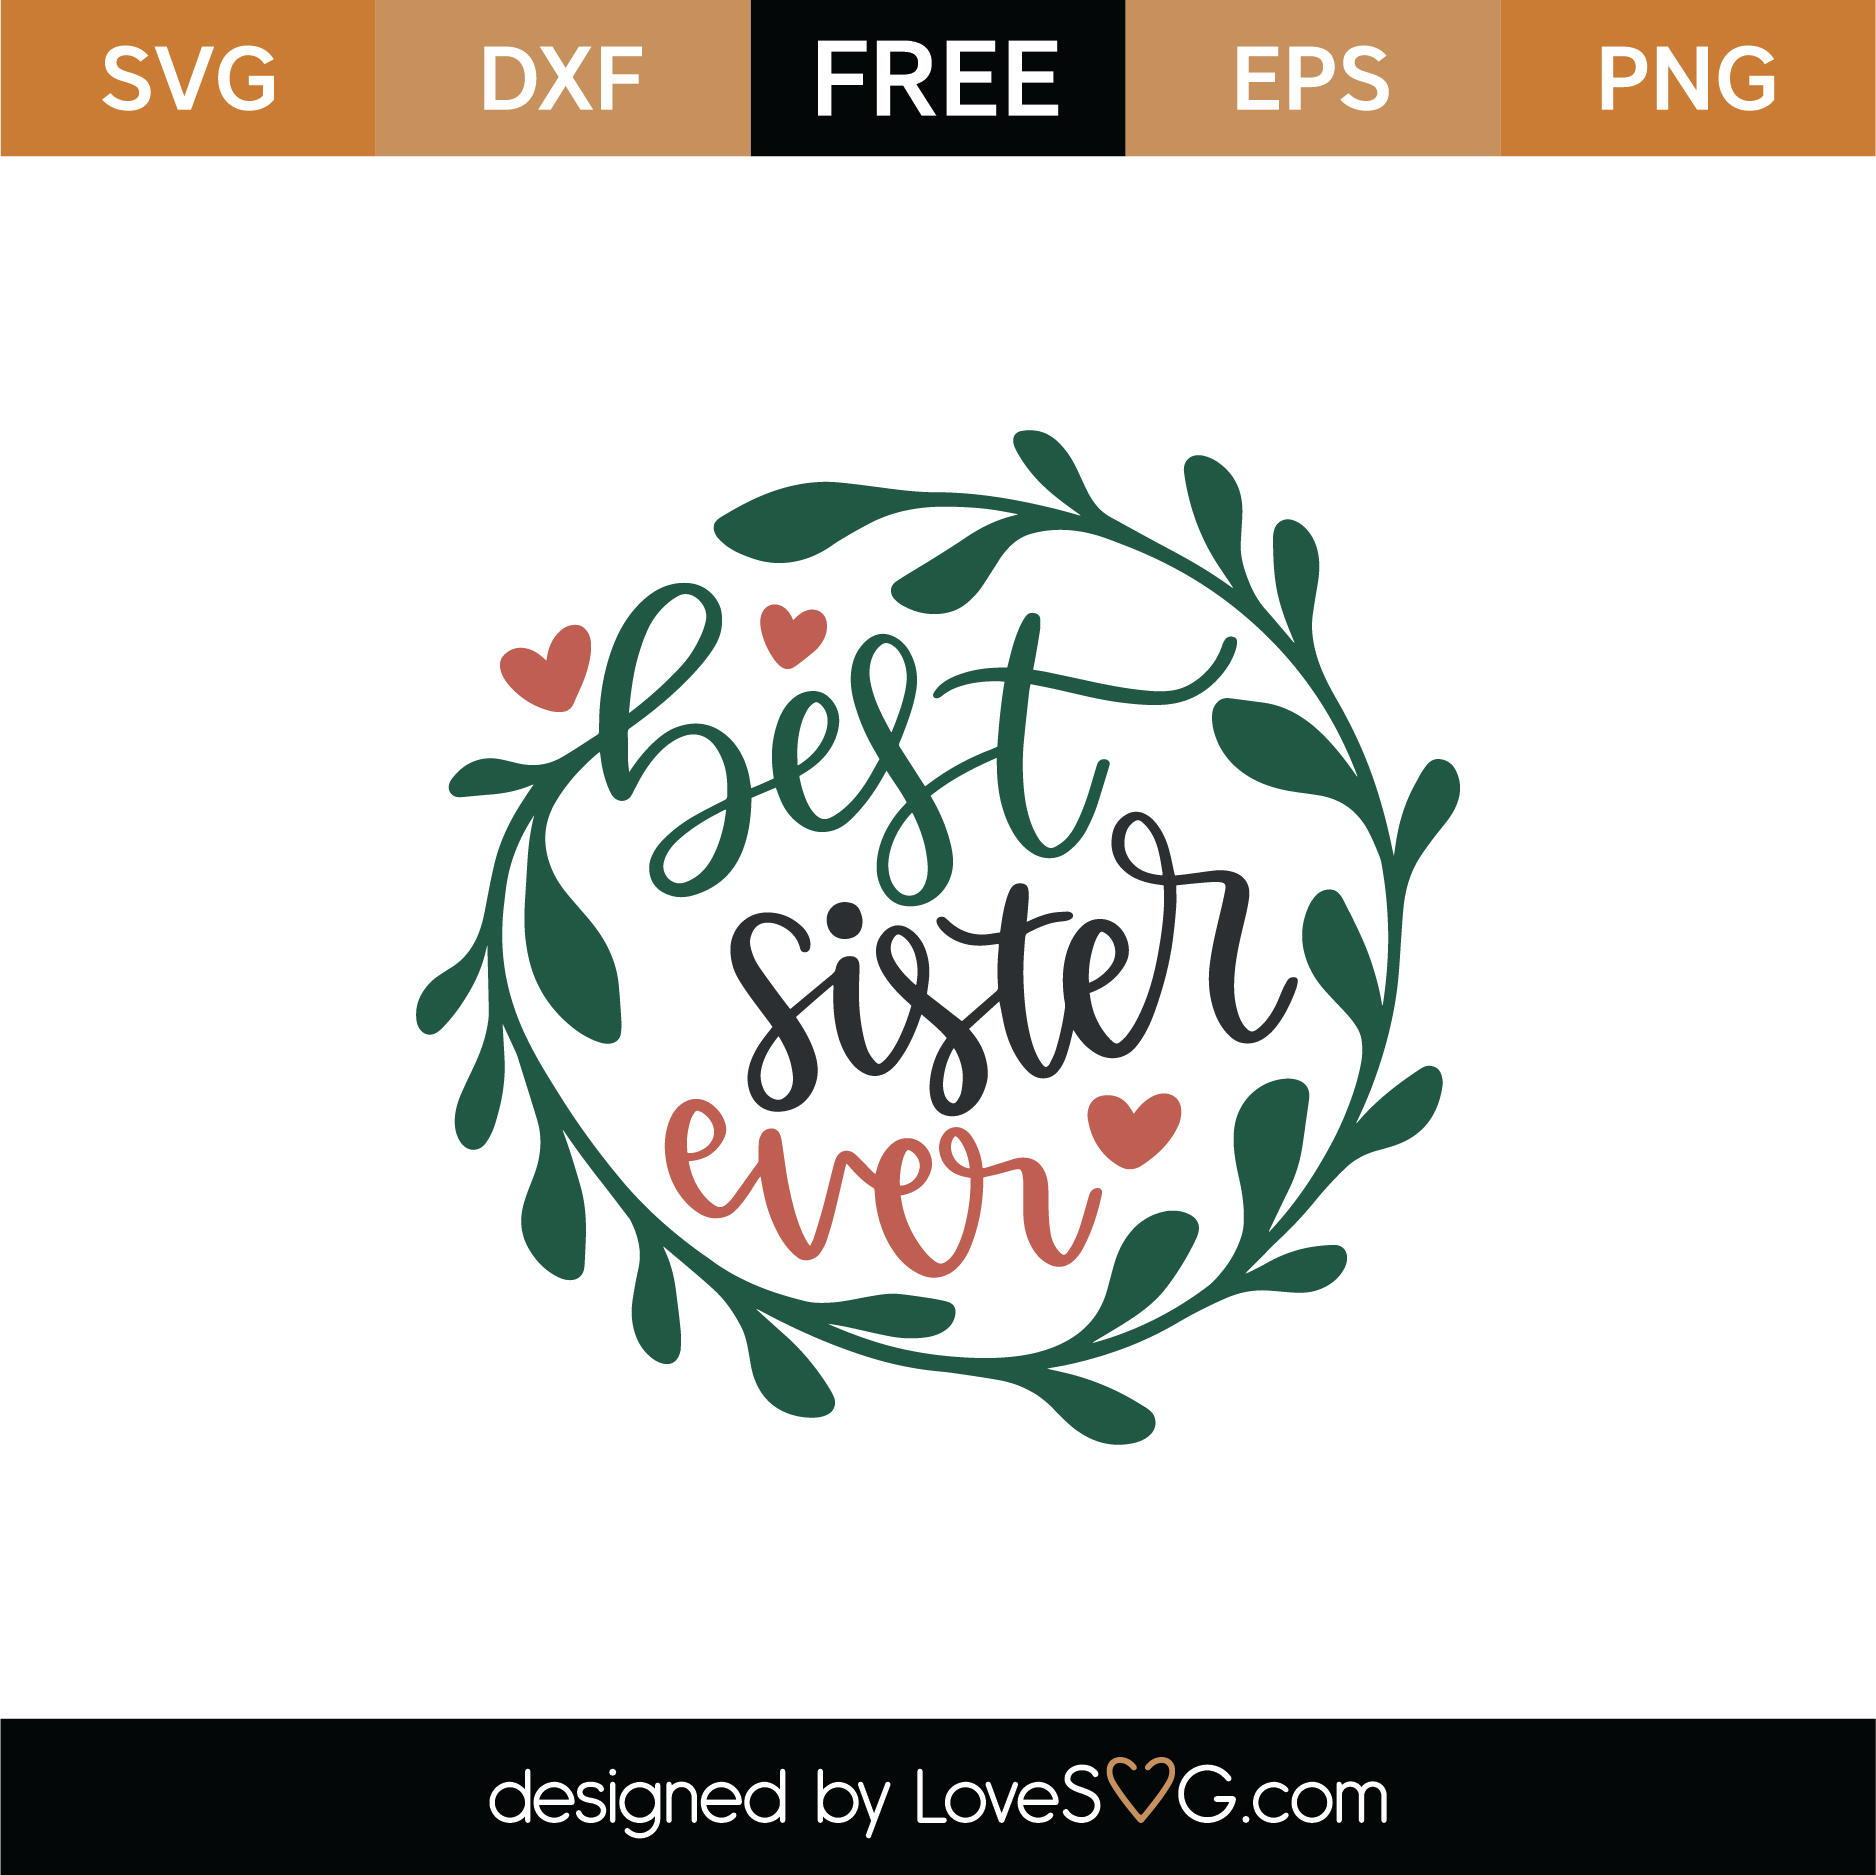 Download Free Best Sister Ever SVG Cut File | Lovesvg.com